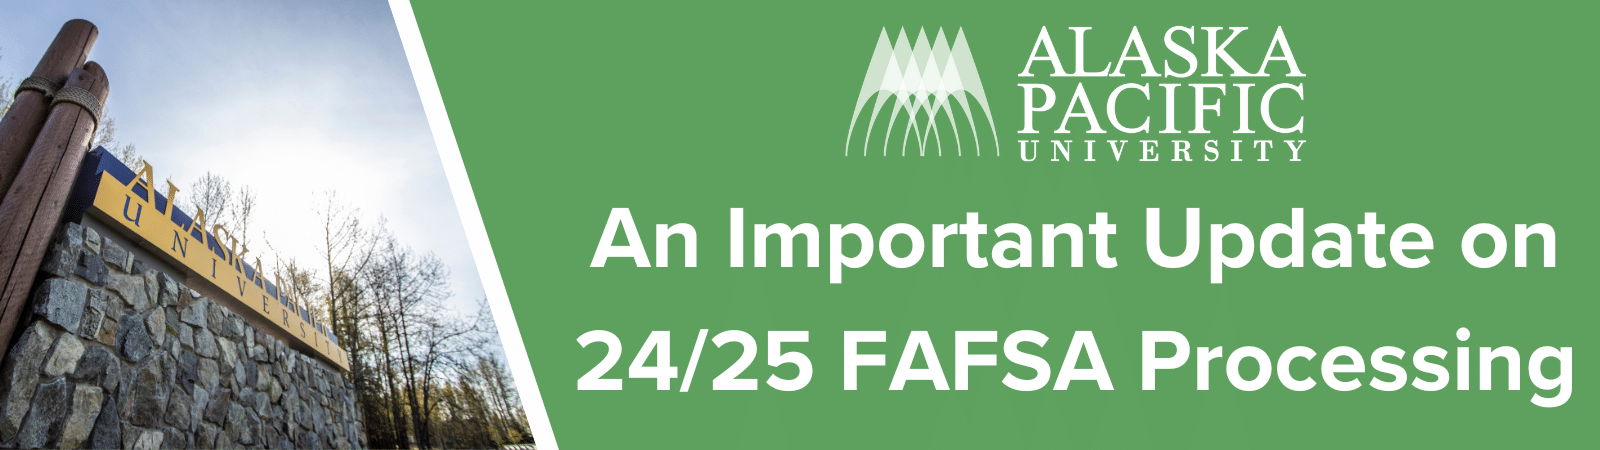 24/25 FAFSA Update